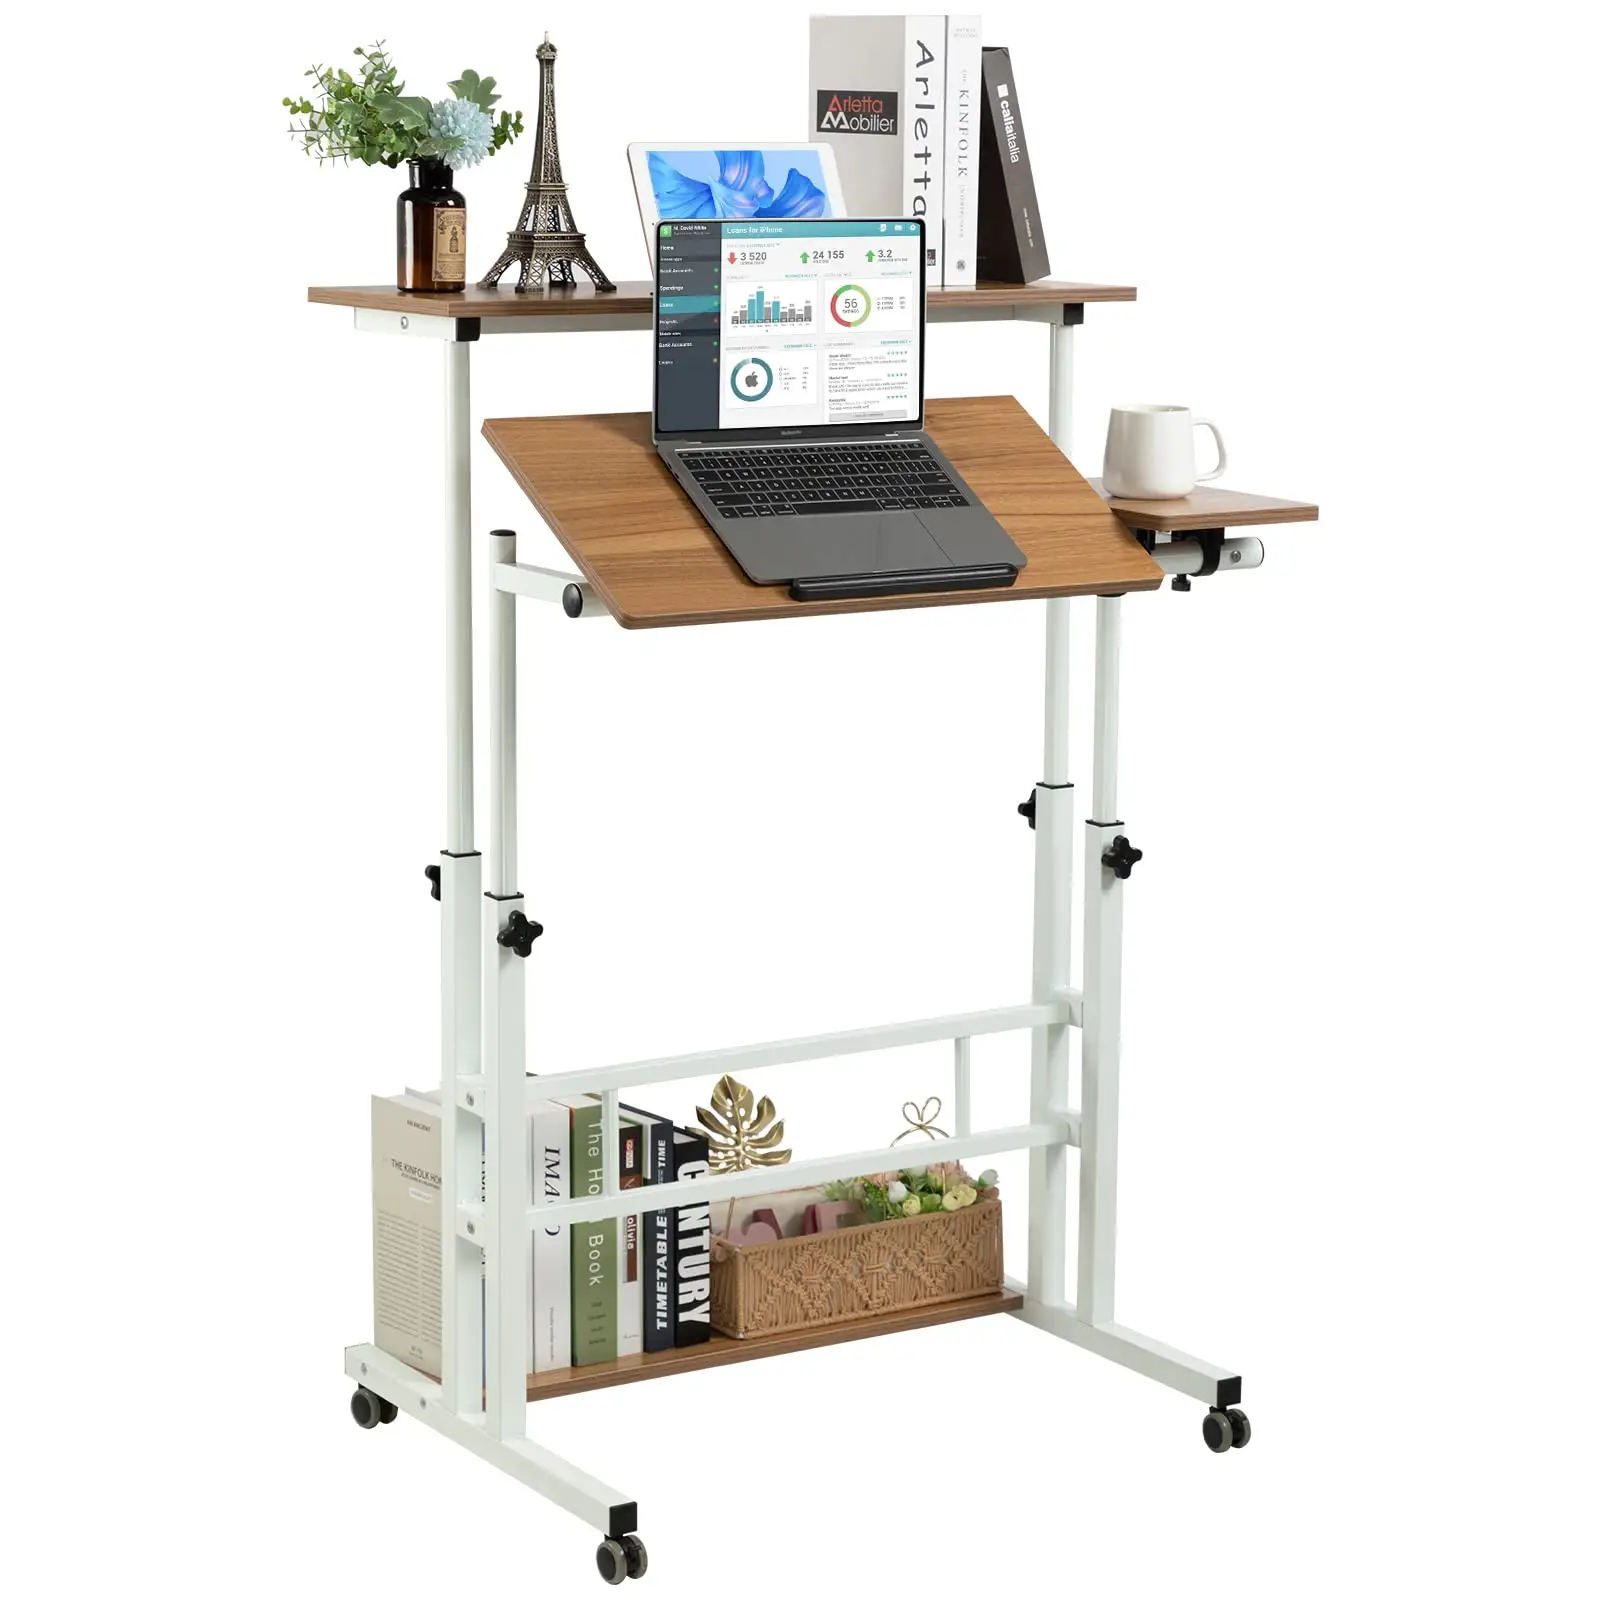 Mobile Standing Desk Adjustable Laptop Mobile Workstation With Wheels